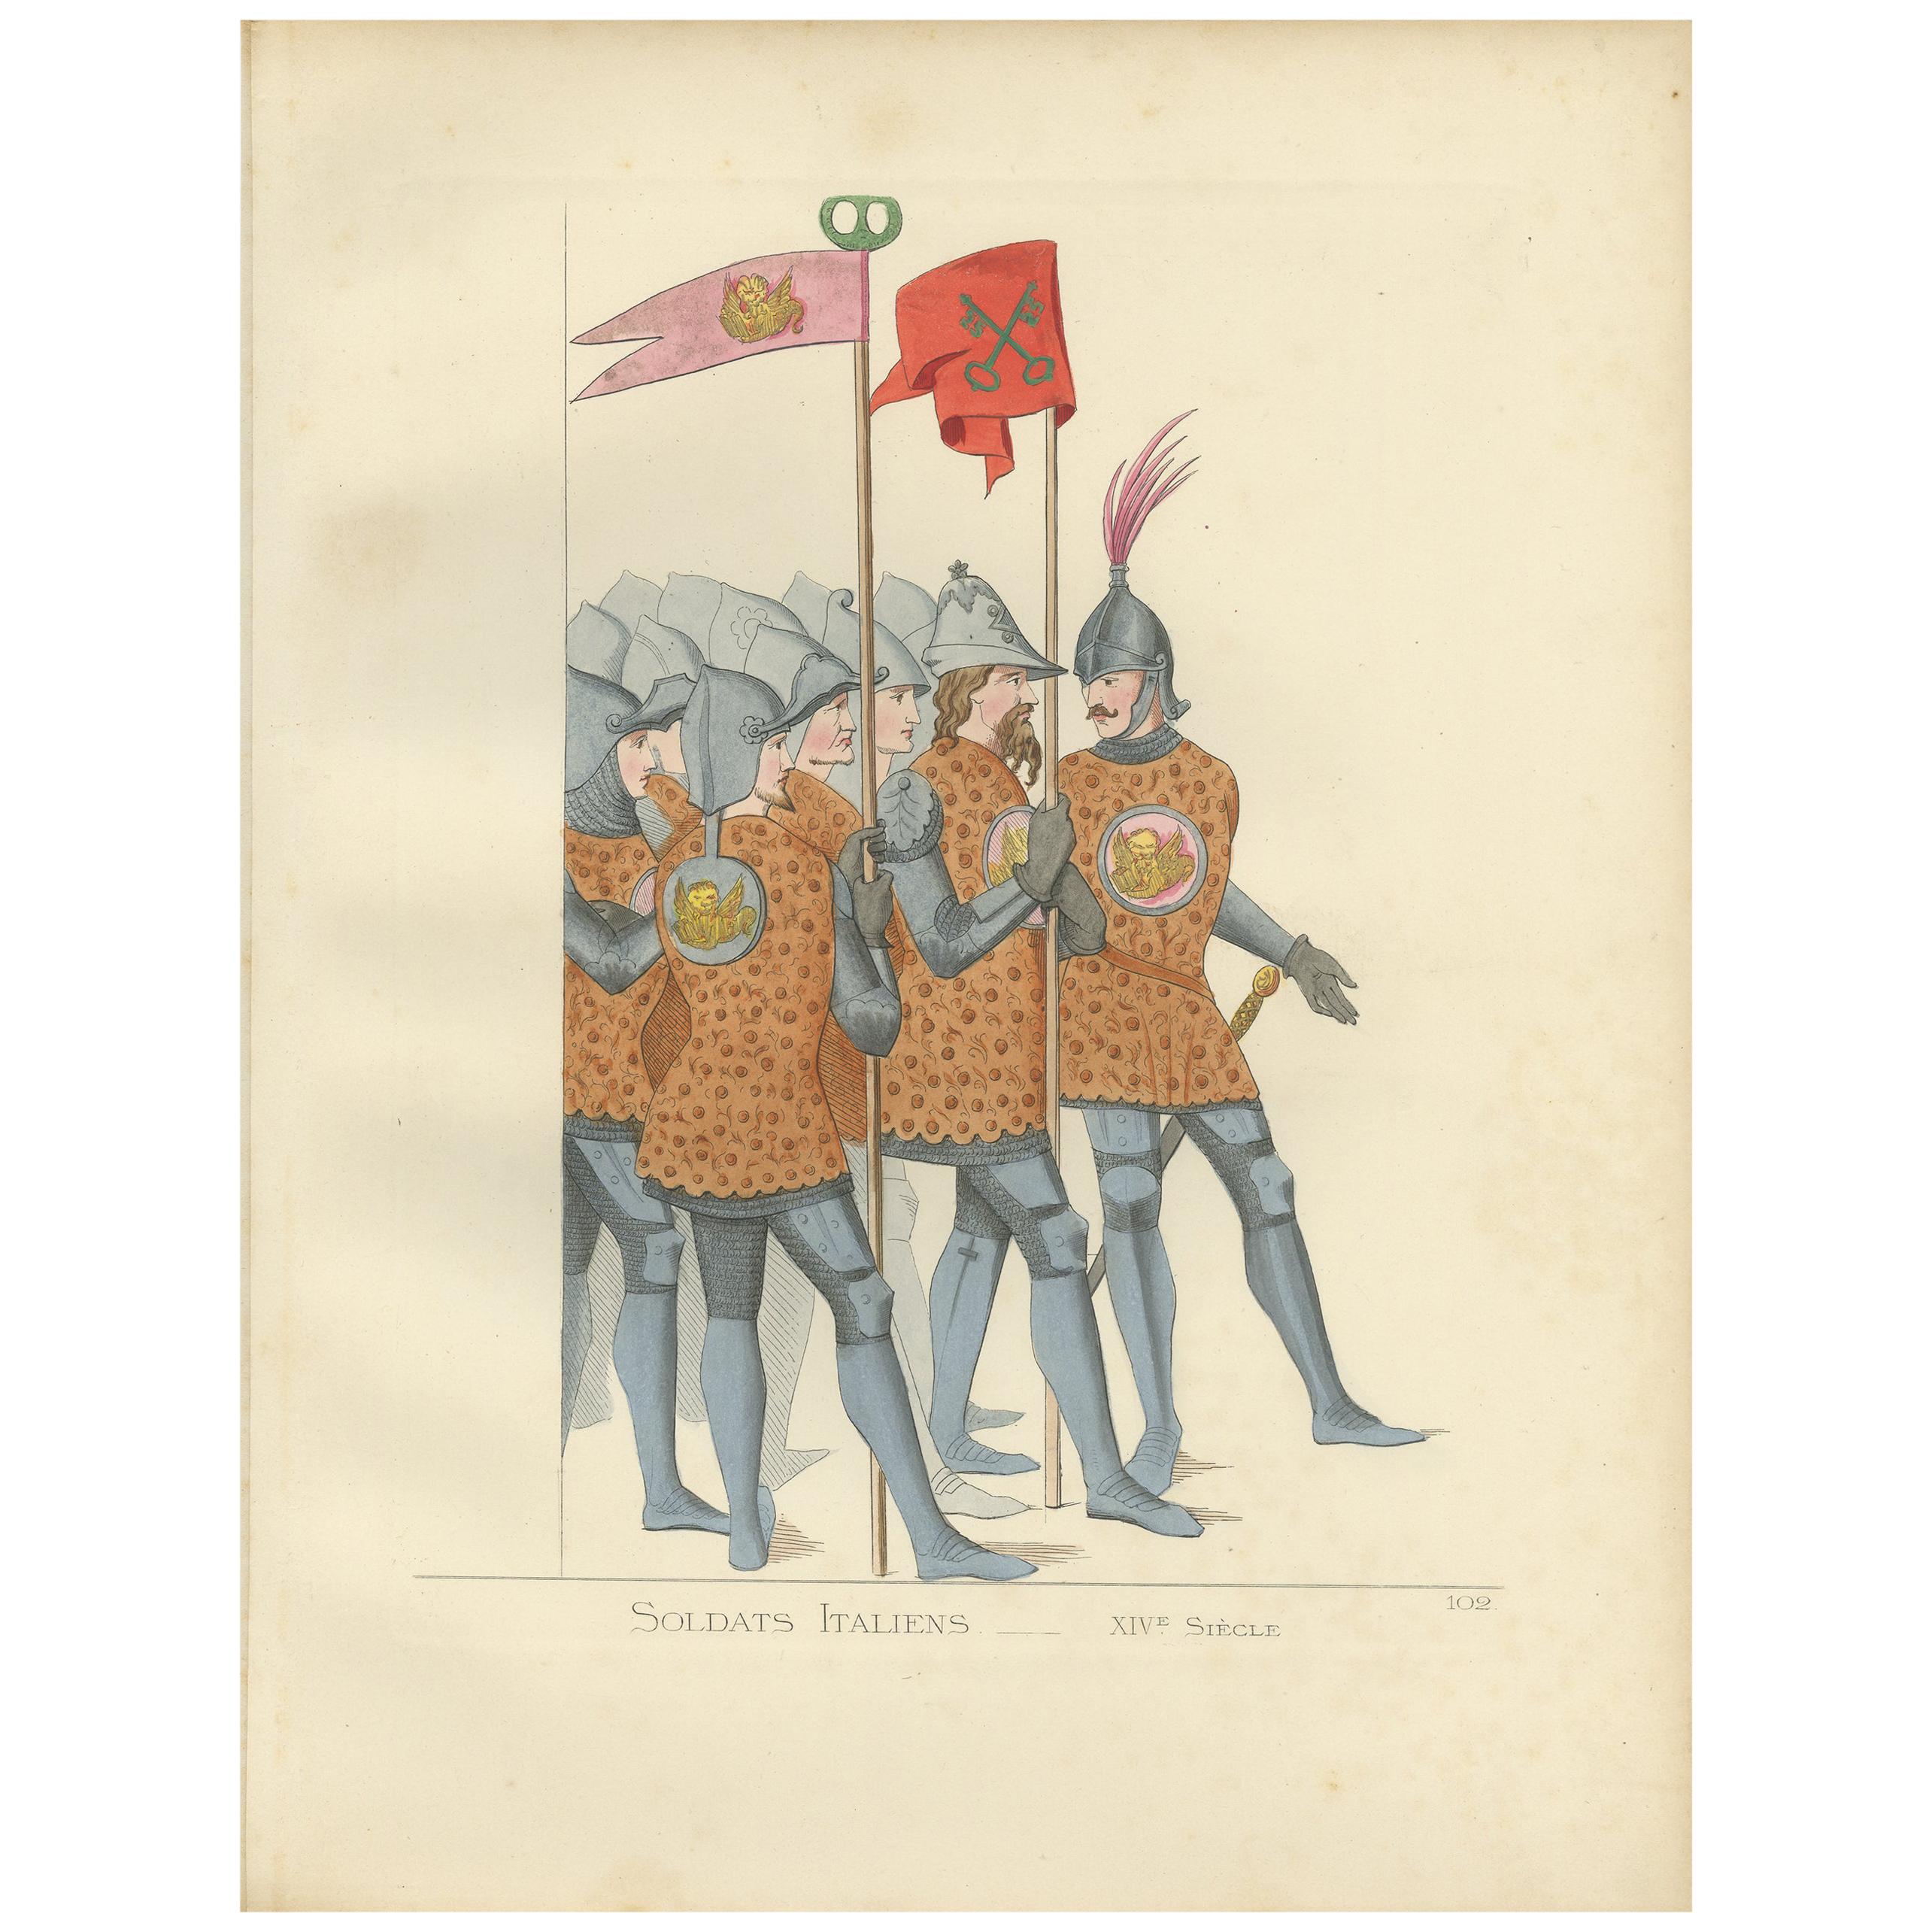 Impression ancienne de soldats italiens, 14e siècle, par Bonnard, 1860